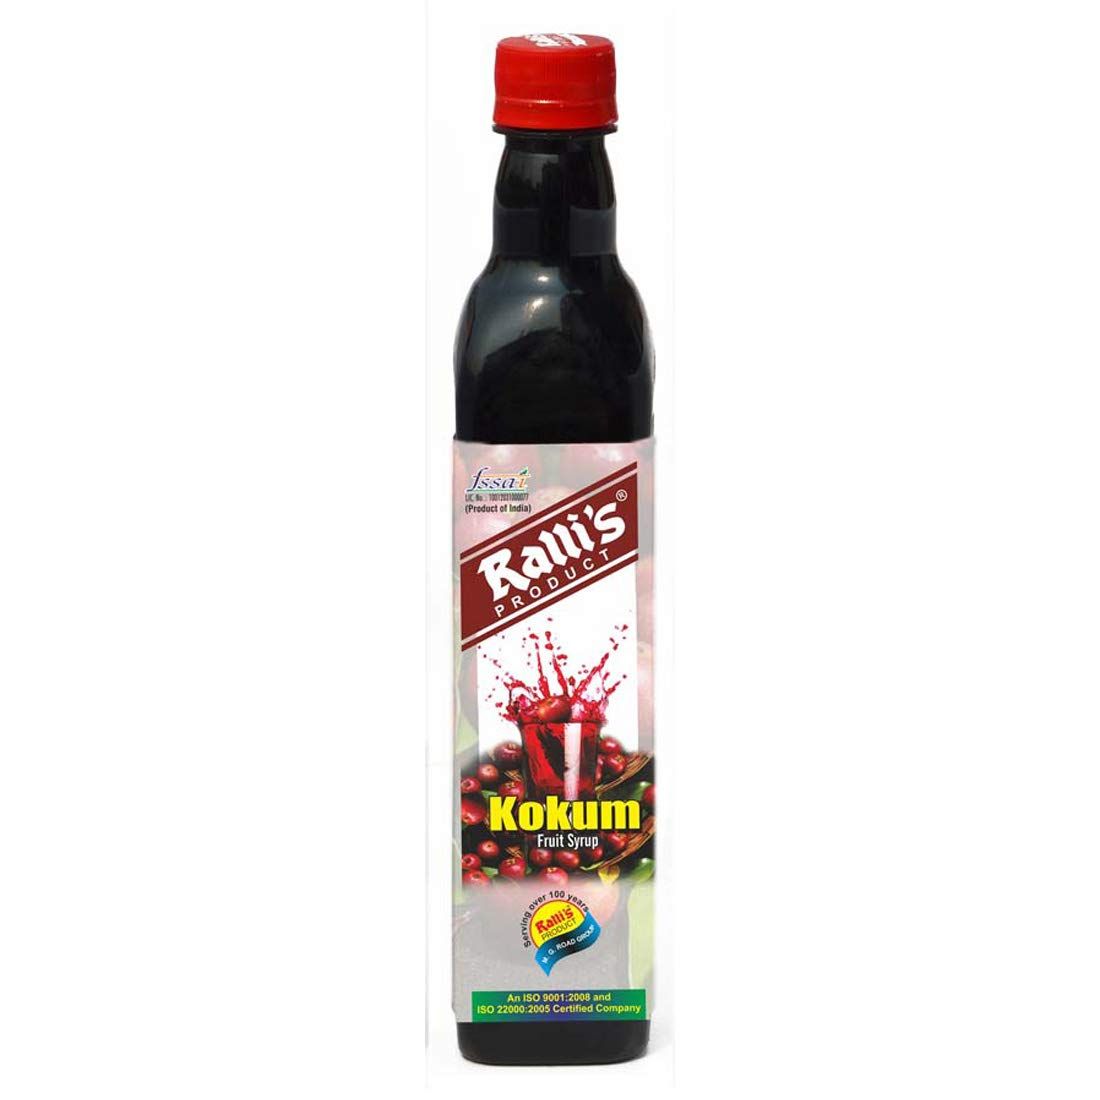 Ralli's Kokum Fruit Syrup Image